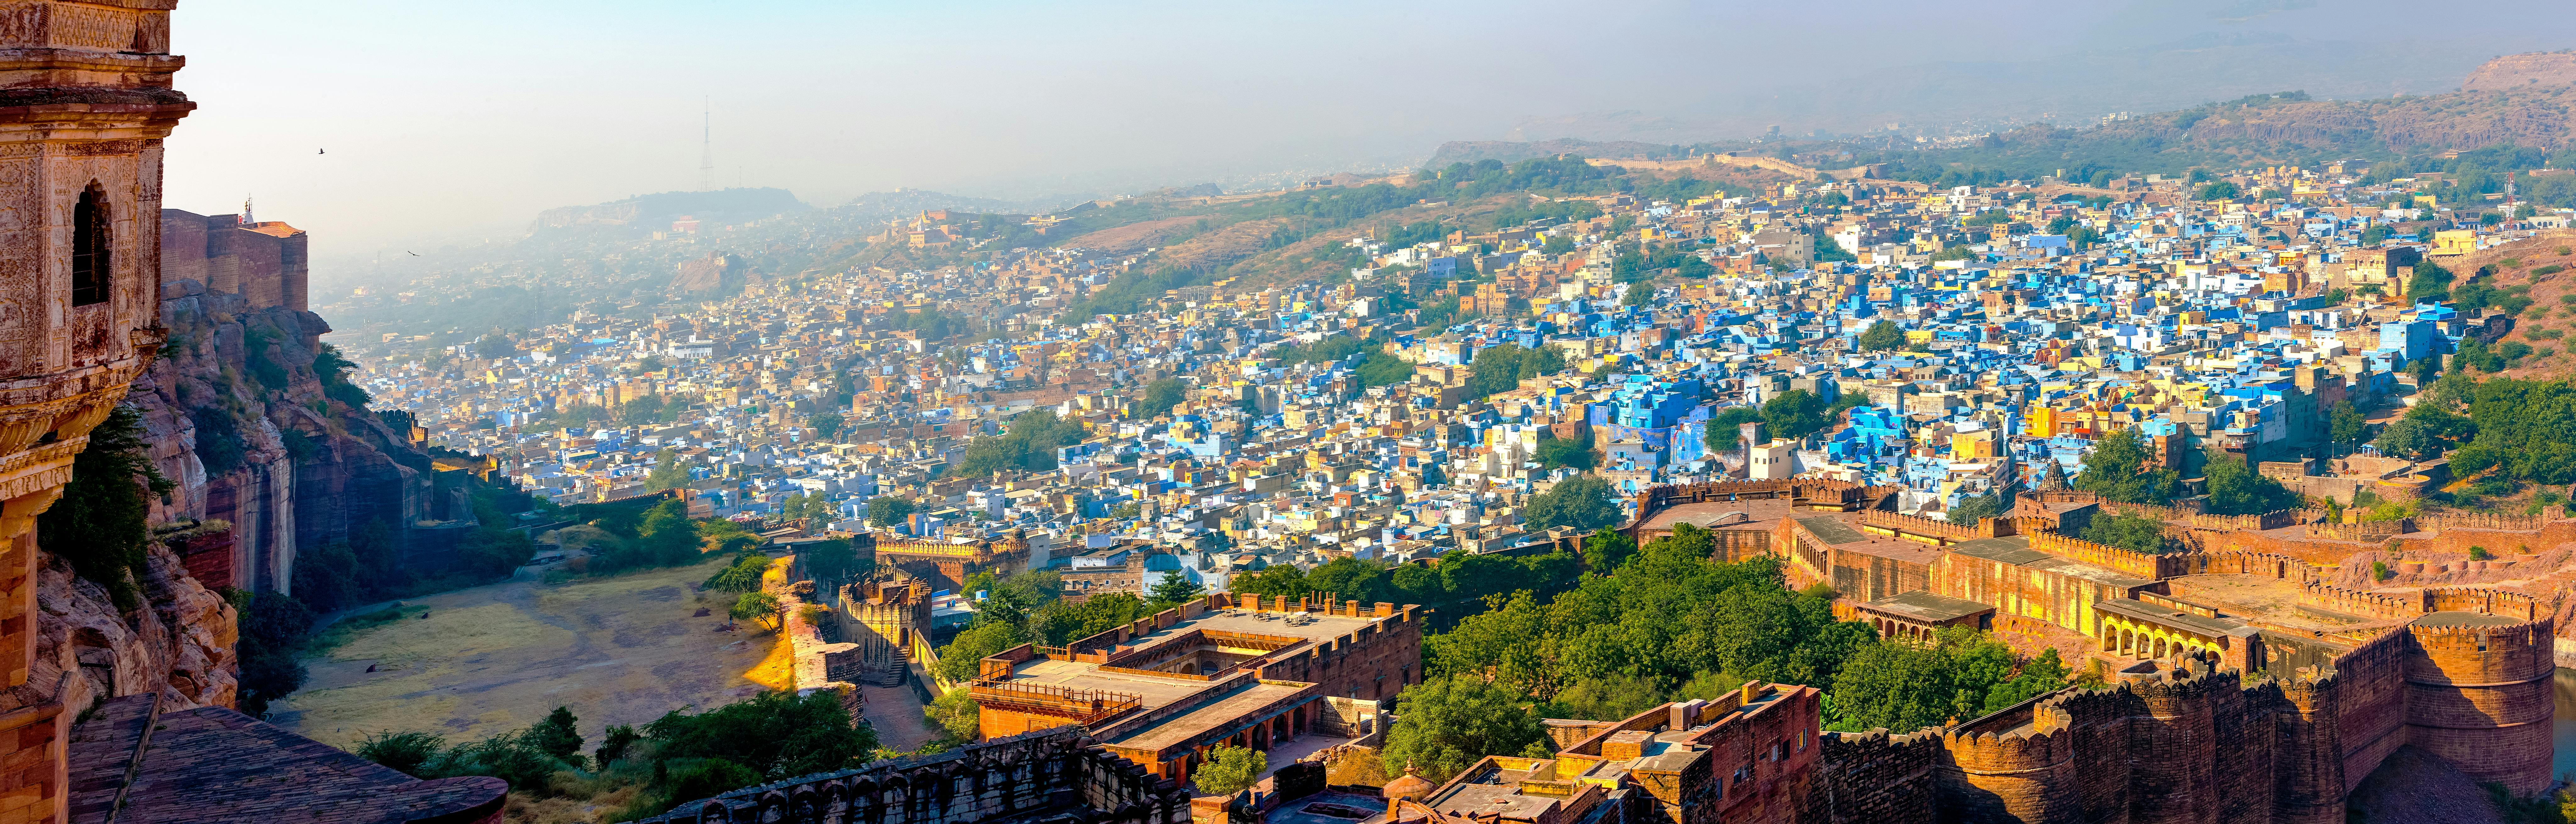 Excursão privada de meio dia pela cidade de Jaipur